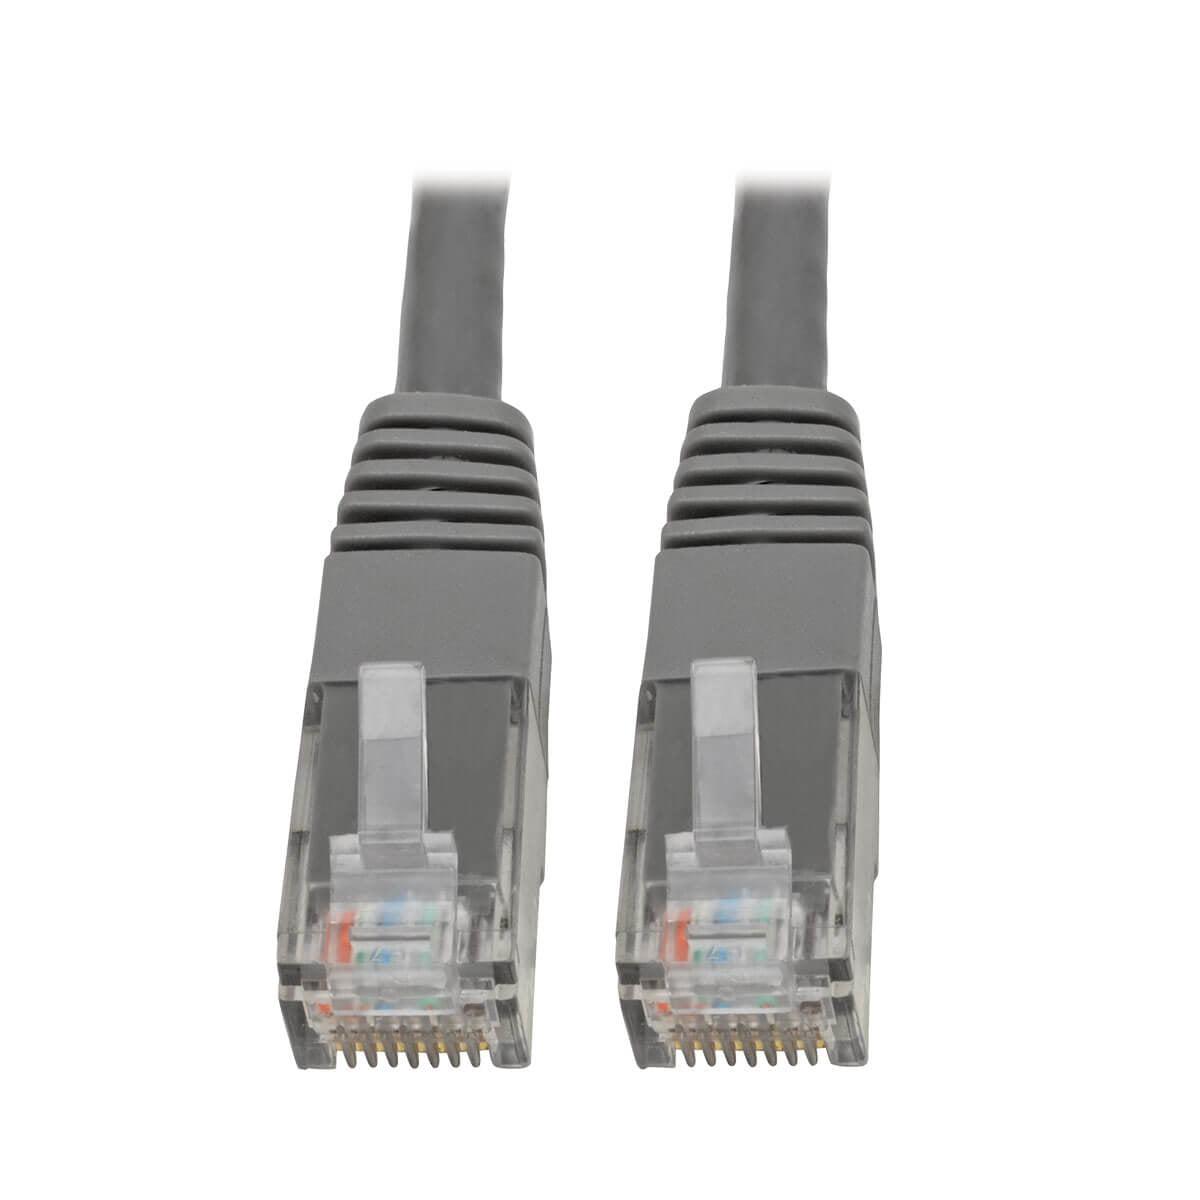 Tripp Lite N200-006-Gy Cat6 Gigabit Molded (Utp) Ethernet Cable (Rj45 M/M), Gray, 6 Ft. (1.83 M)